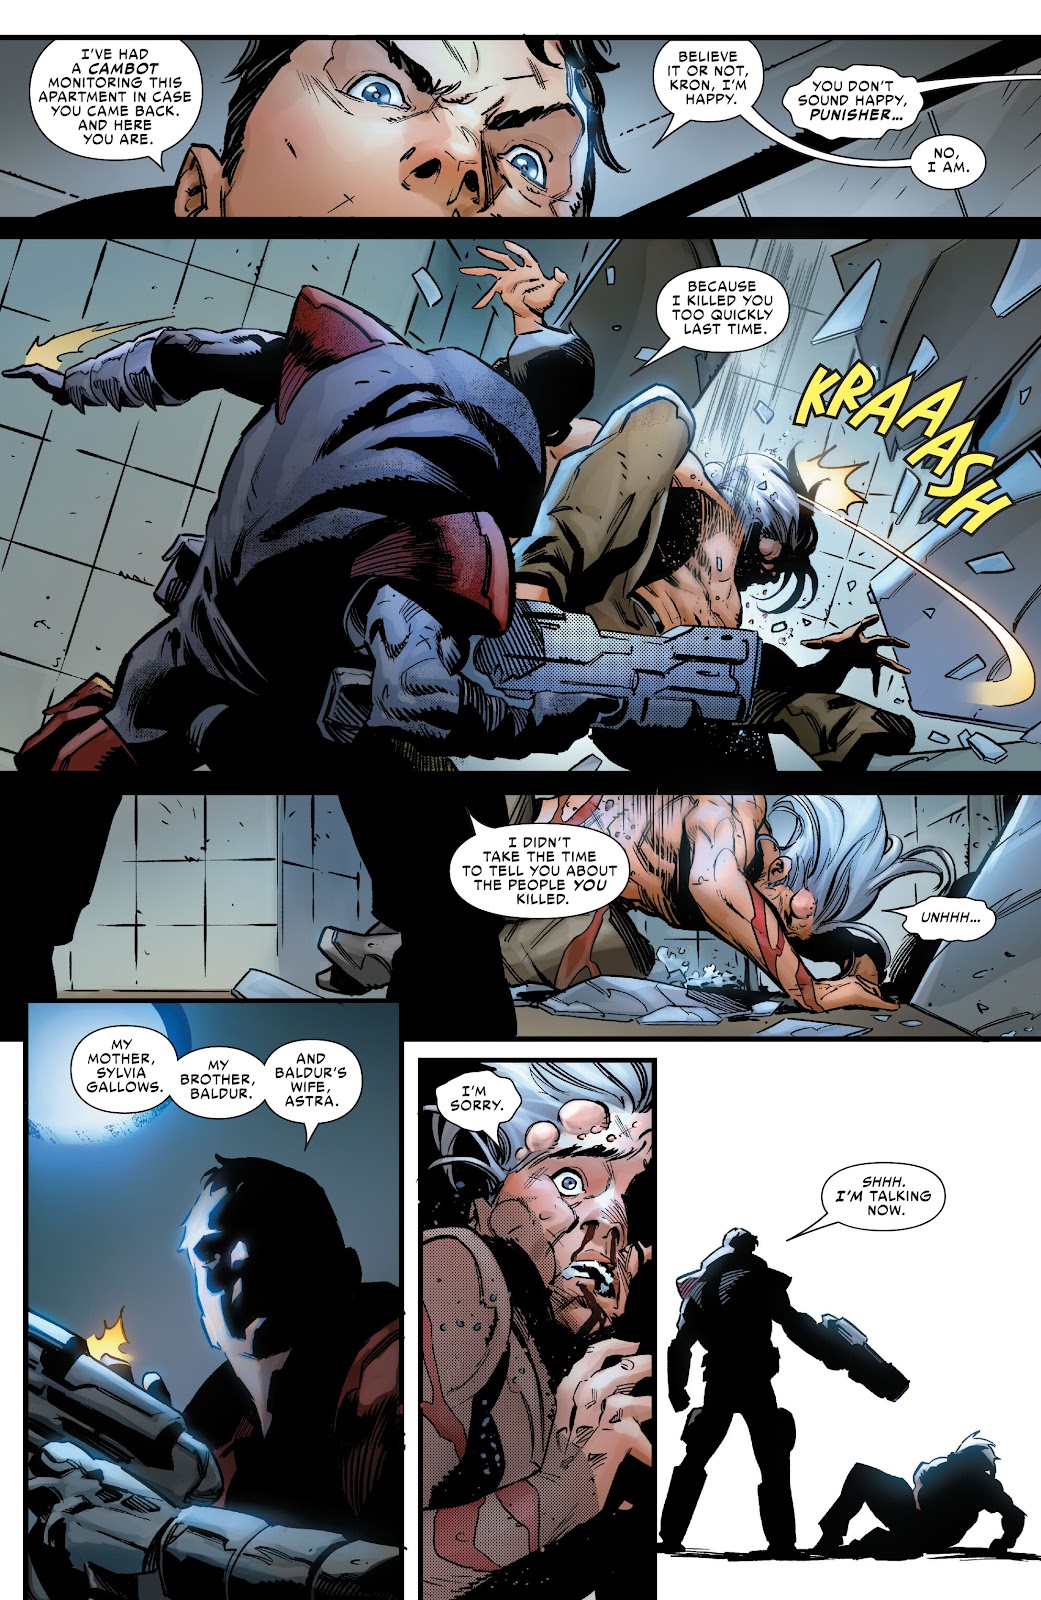 Symbiote Spider-Man 2099 issue 1 - Page 25